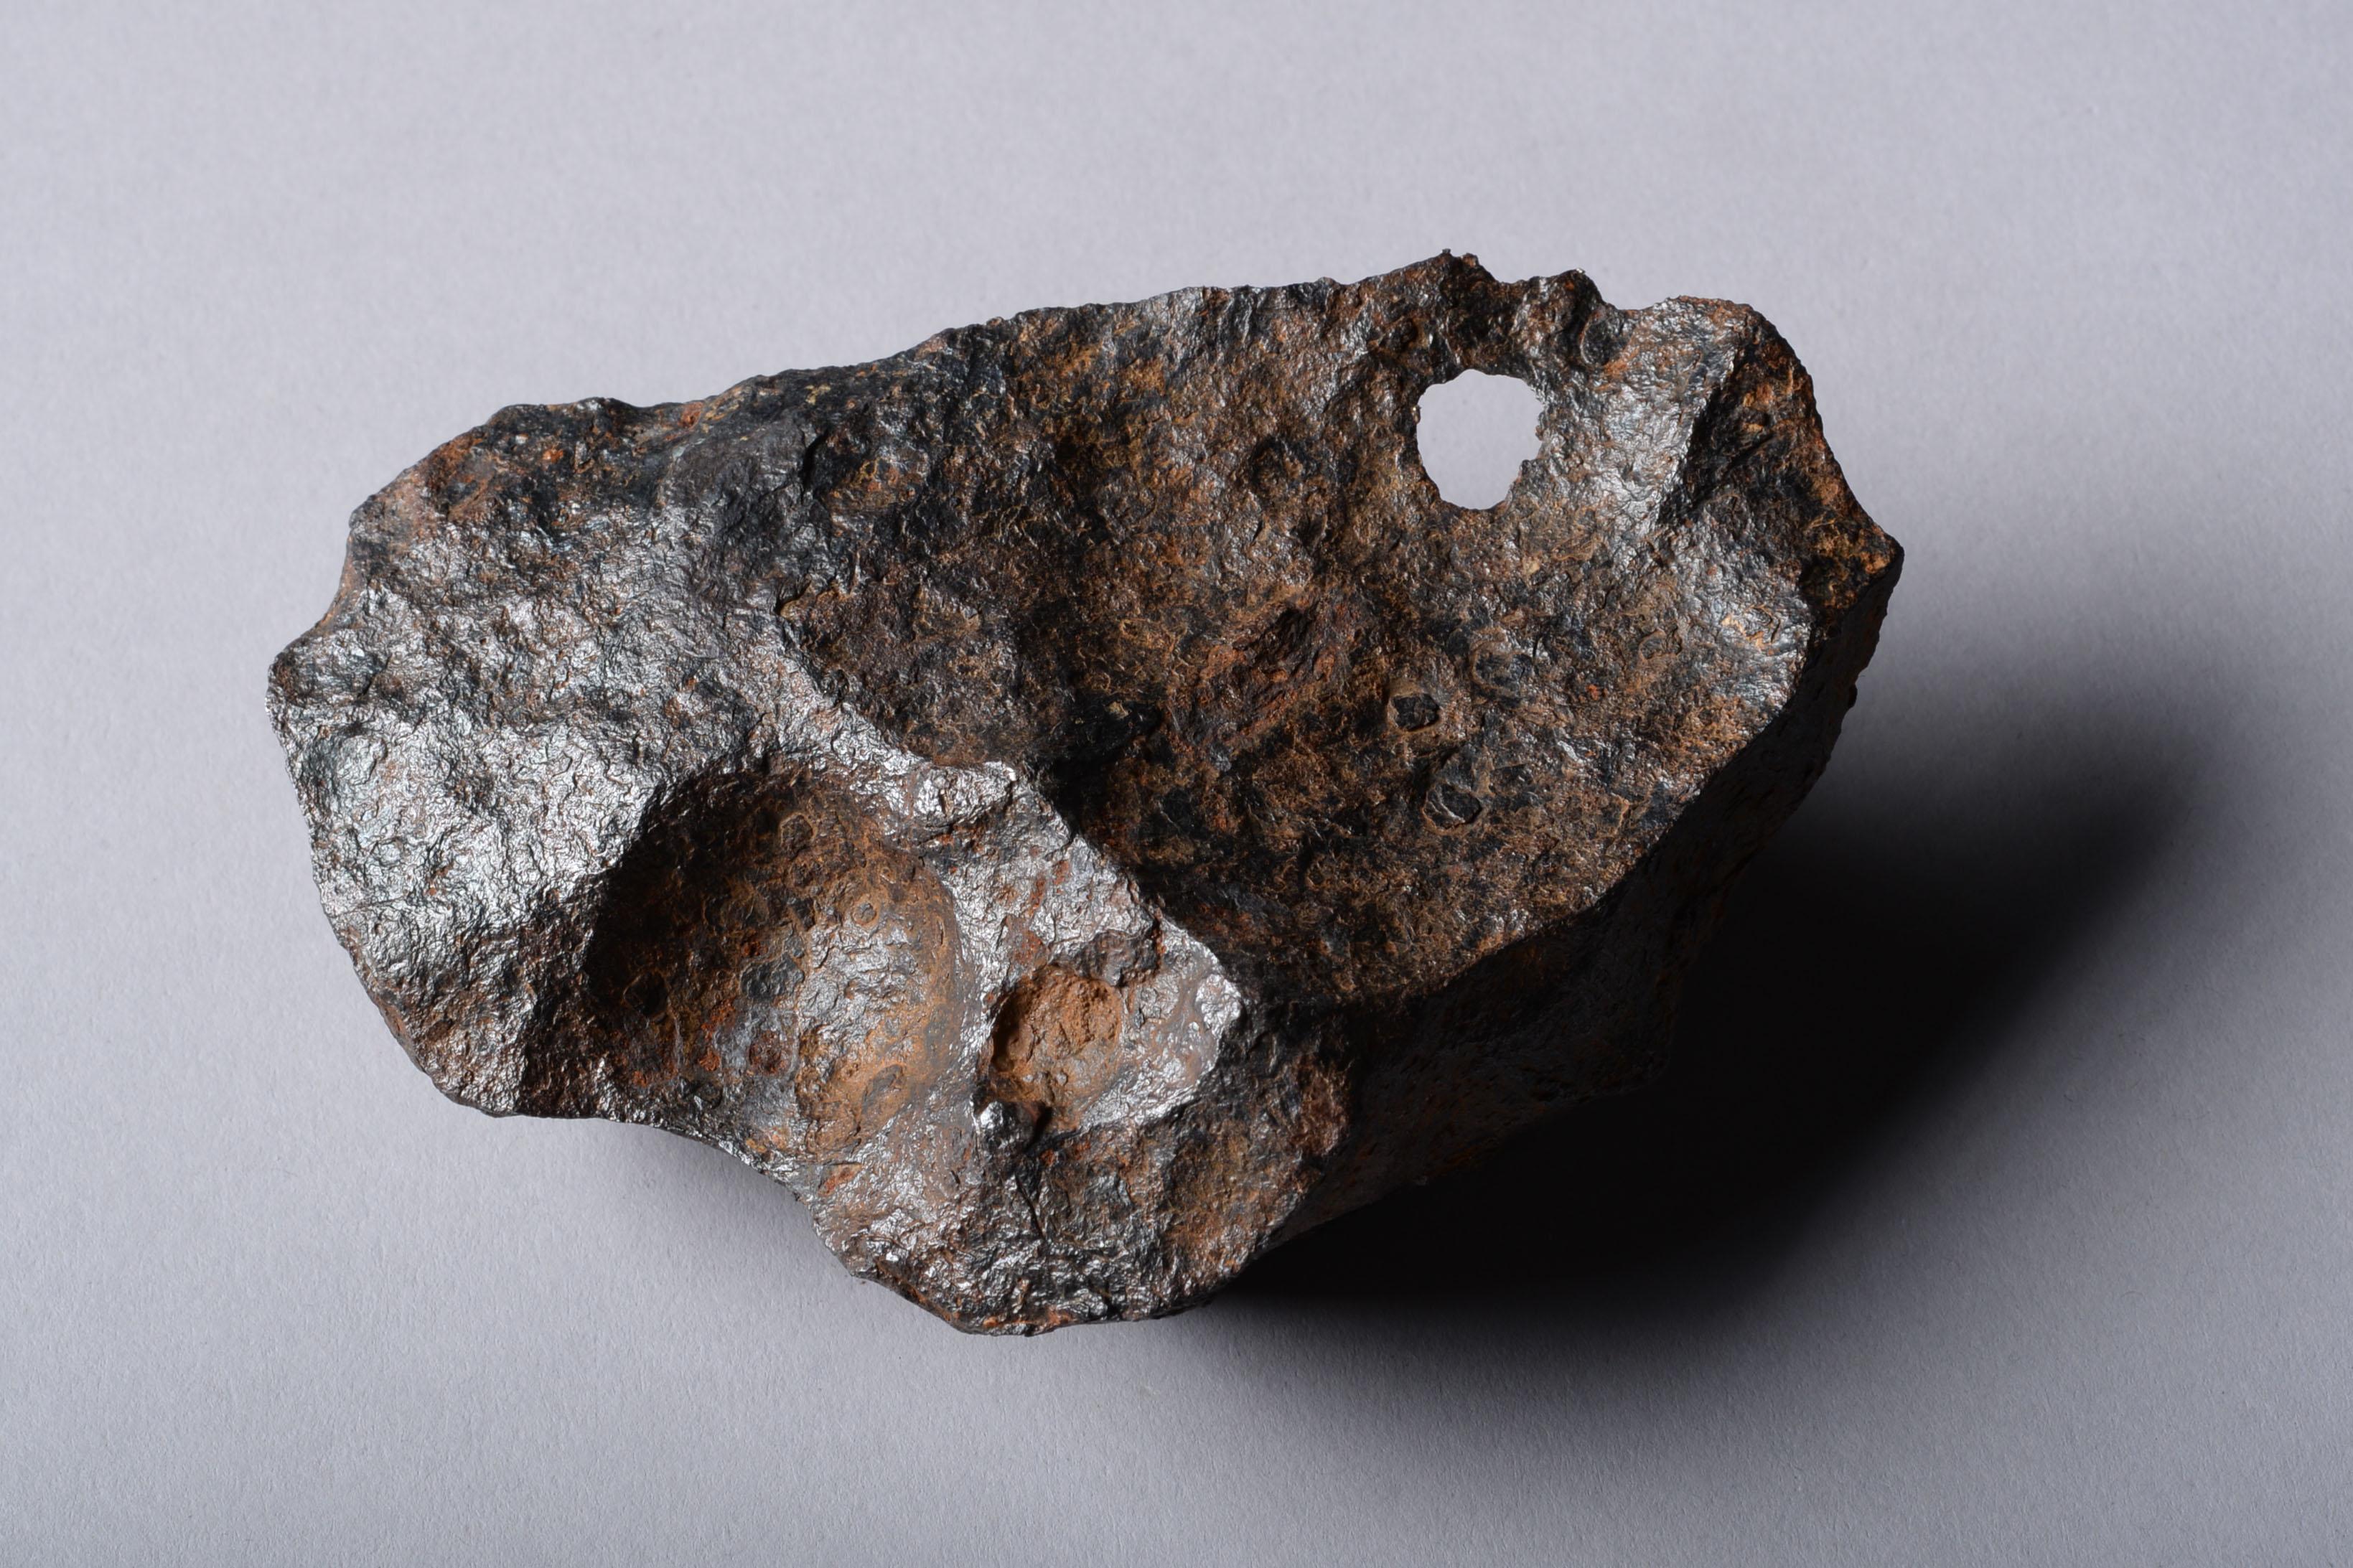 Sculptural Canyon Diablo Iron Octahedrite Meteorite 5